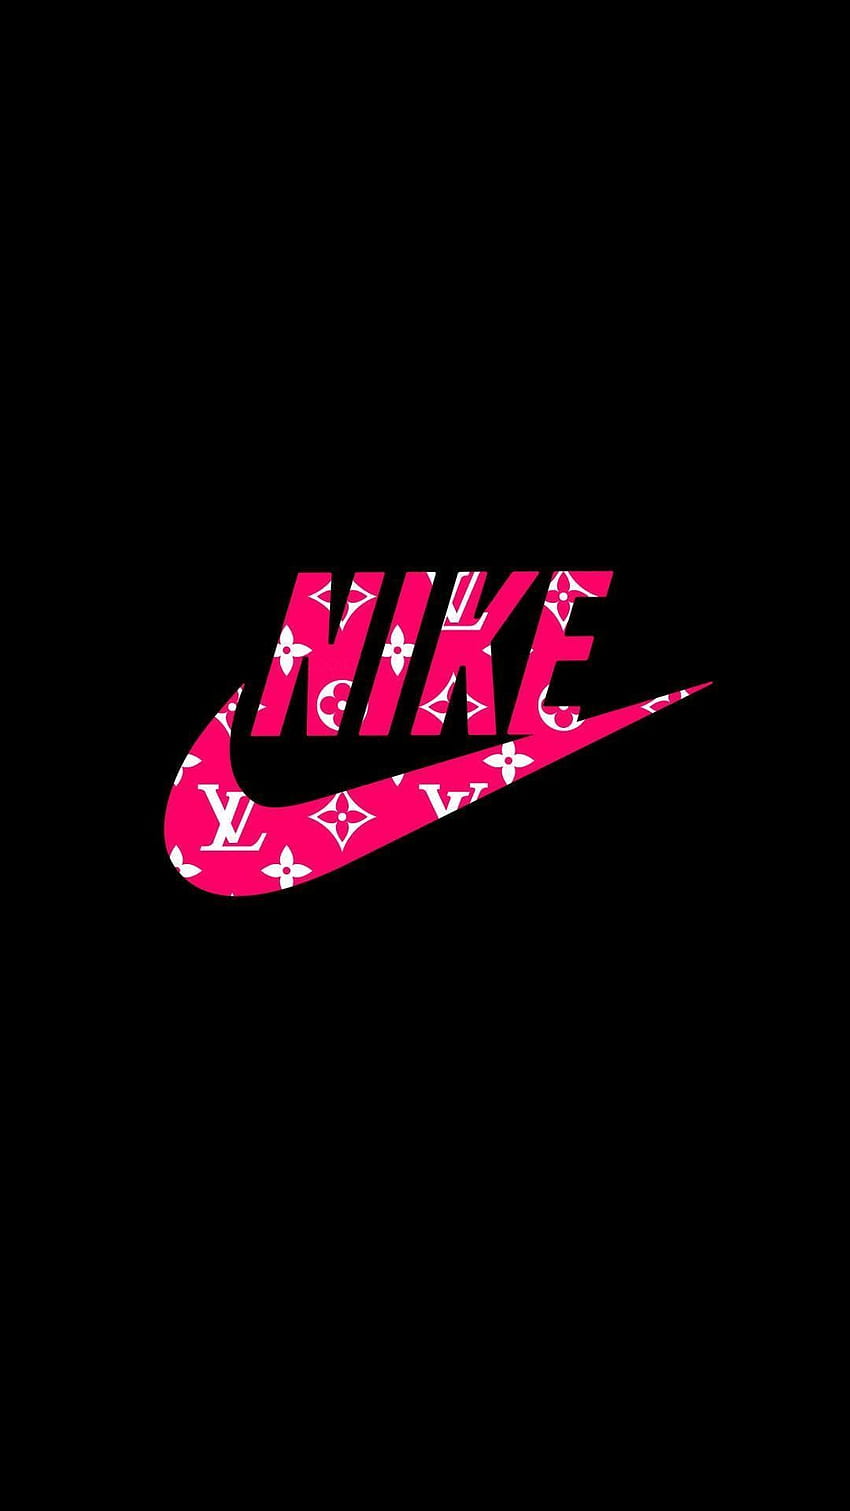 Hãy đem phong cách thời trang Nike đến điện thoại của bạn với những hình nền Nike logo HD mang phong cách Tumblr đặc trưng. Được thiết kế với màu hồng nữ tính và đường nét tinh tế, các hình nền này sẽ chỉnh sửa cho điện thoại của bạn trở nên thật sự đẹp và độc đáo. Hãy tải về từ ngay hôm nay!